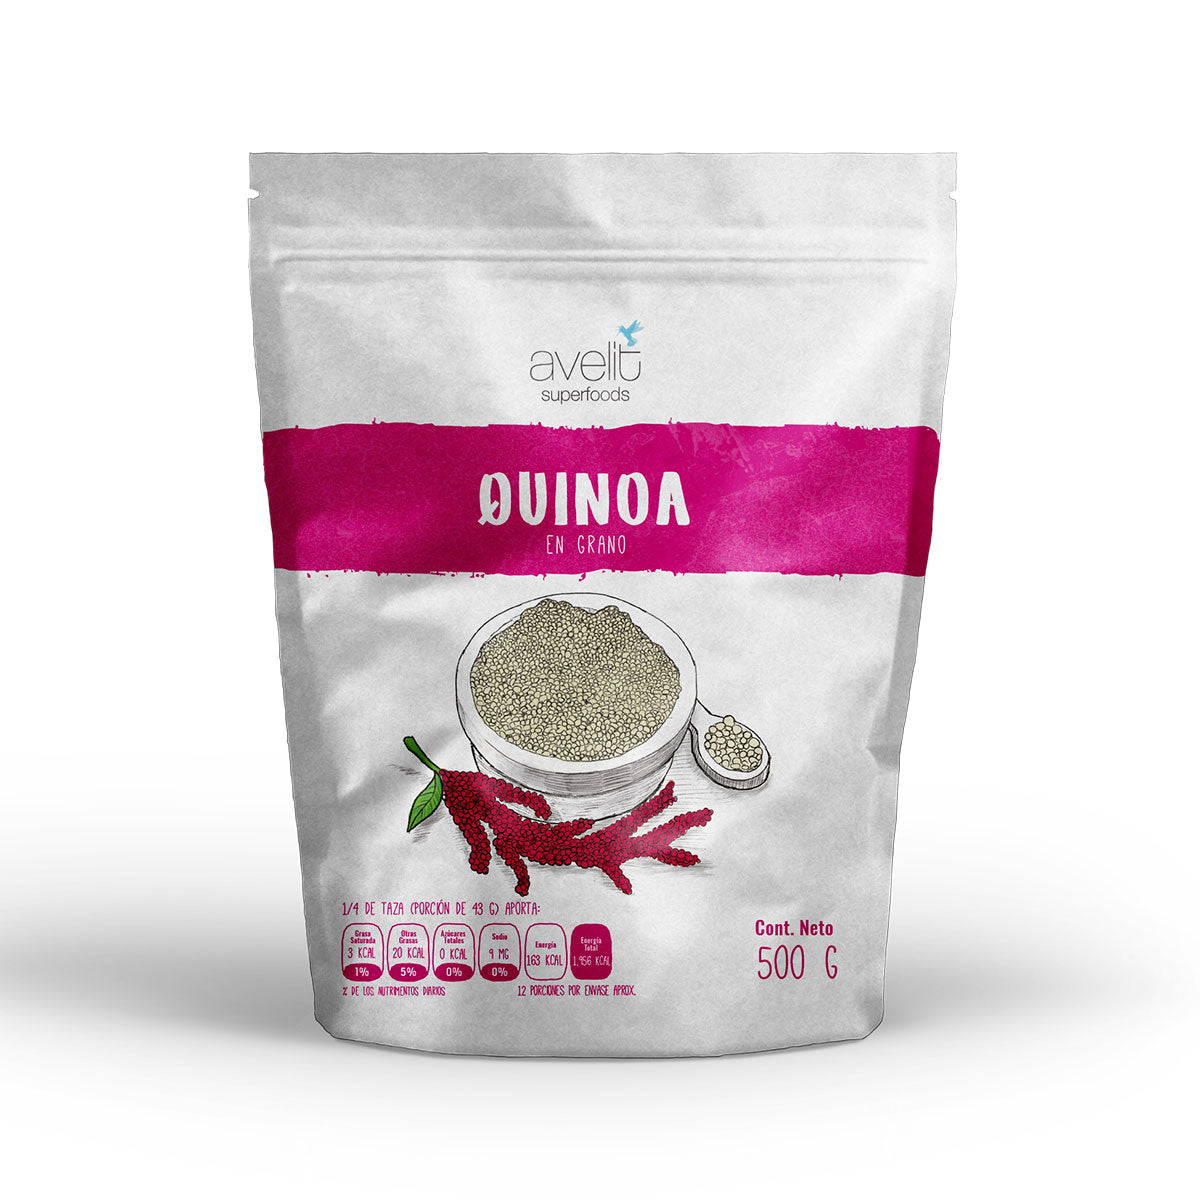 Quinoa en Grano